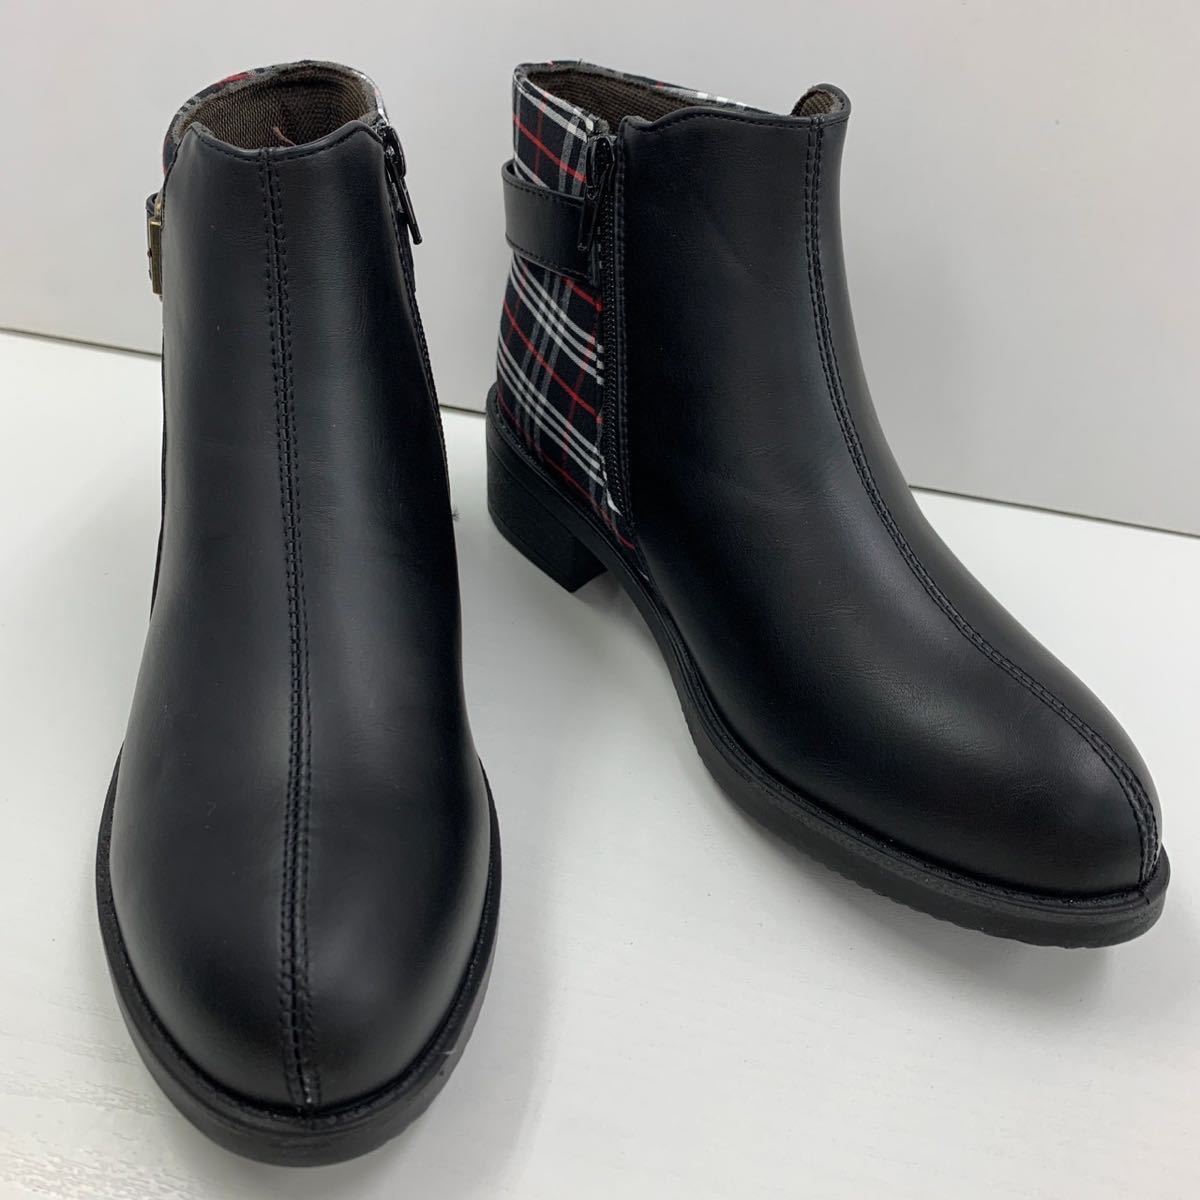  новый товар женский L размер 23.5-24.0cm водоотталкивающий ботинки искусственная кожа ботинки короткие сапоги ремень ботинки Zip ботинки черный чёрный taby9862